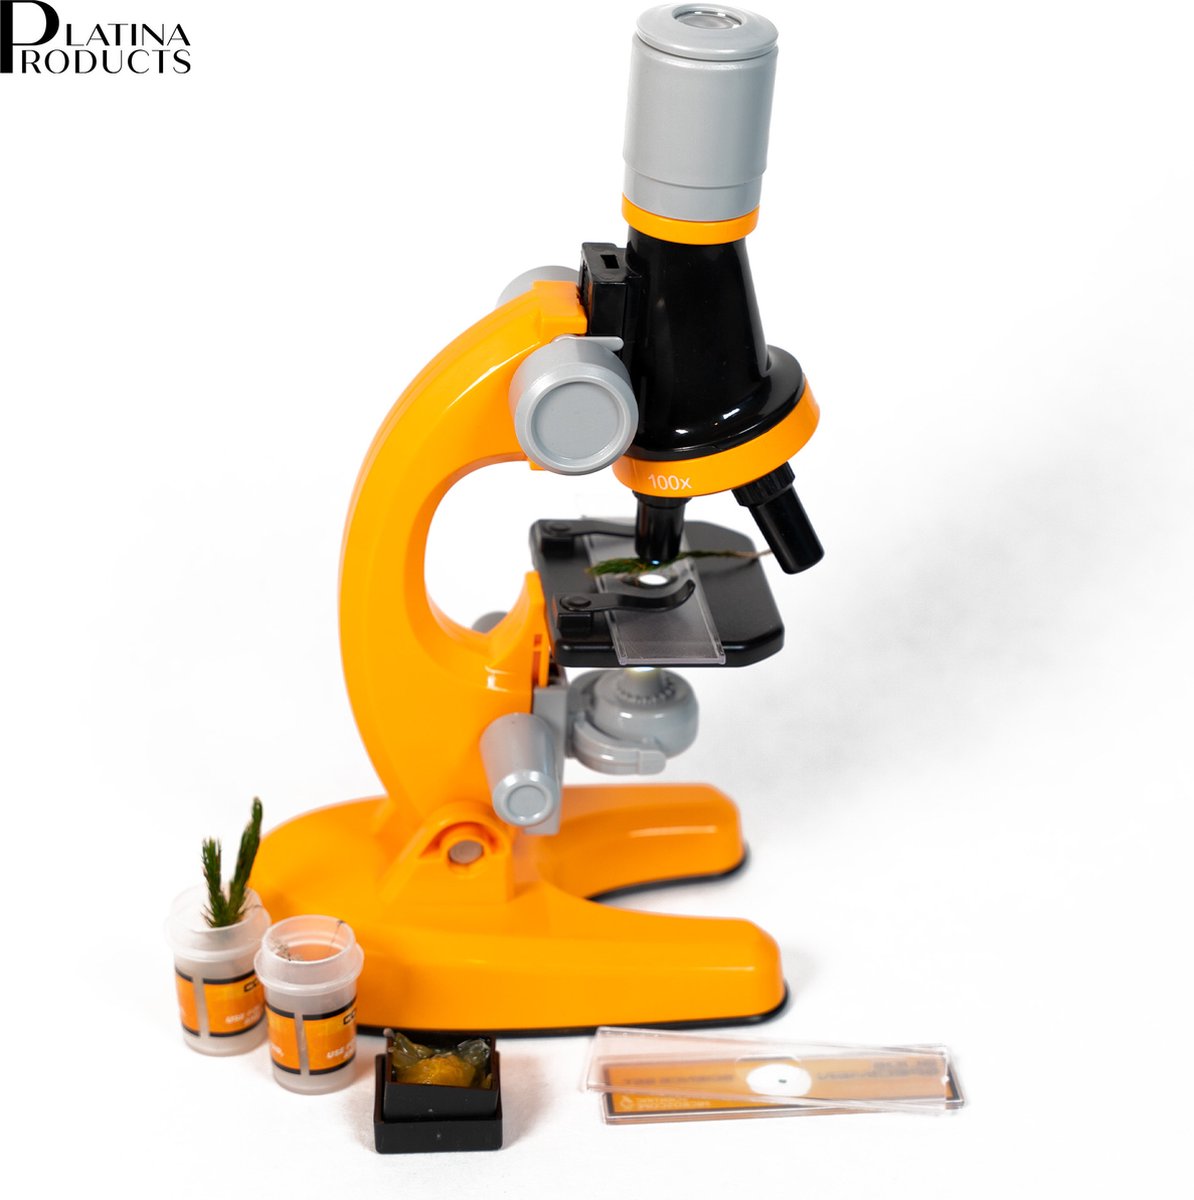 Platina products - Microscoop voor kinderen - X100 X400 X1200 - incl. batterijen - veel accessoires